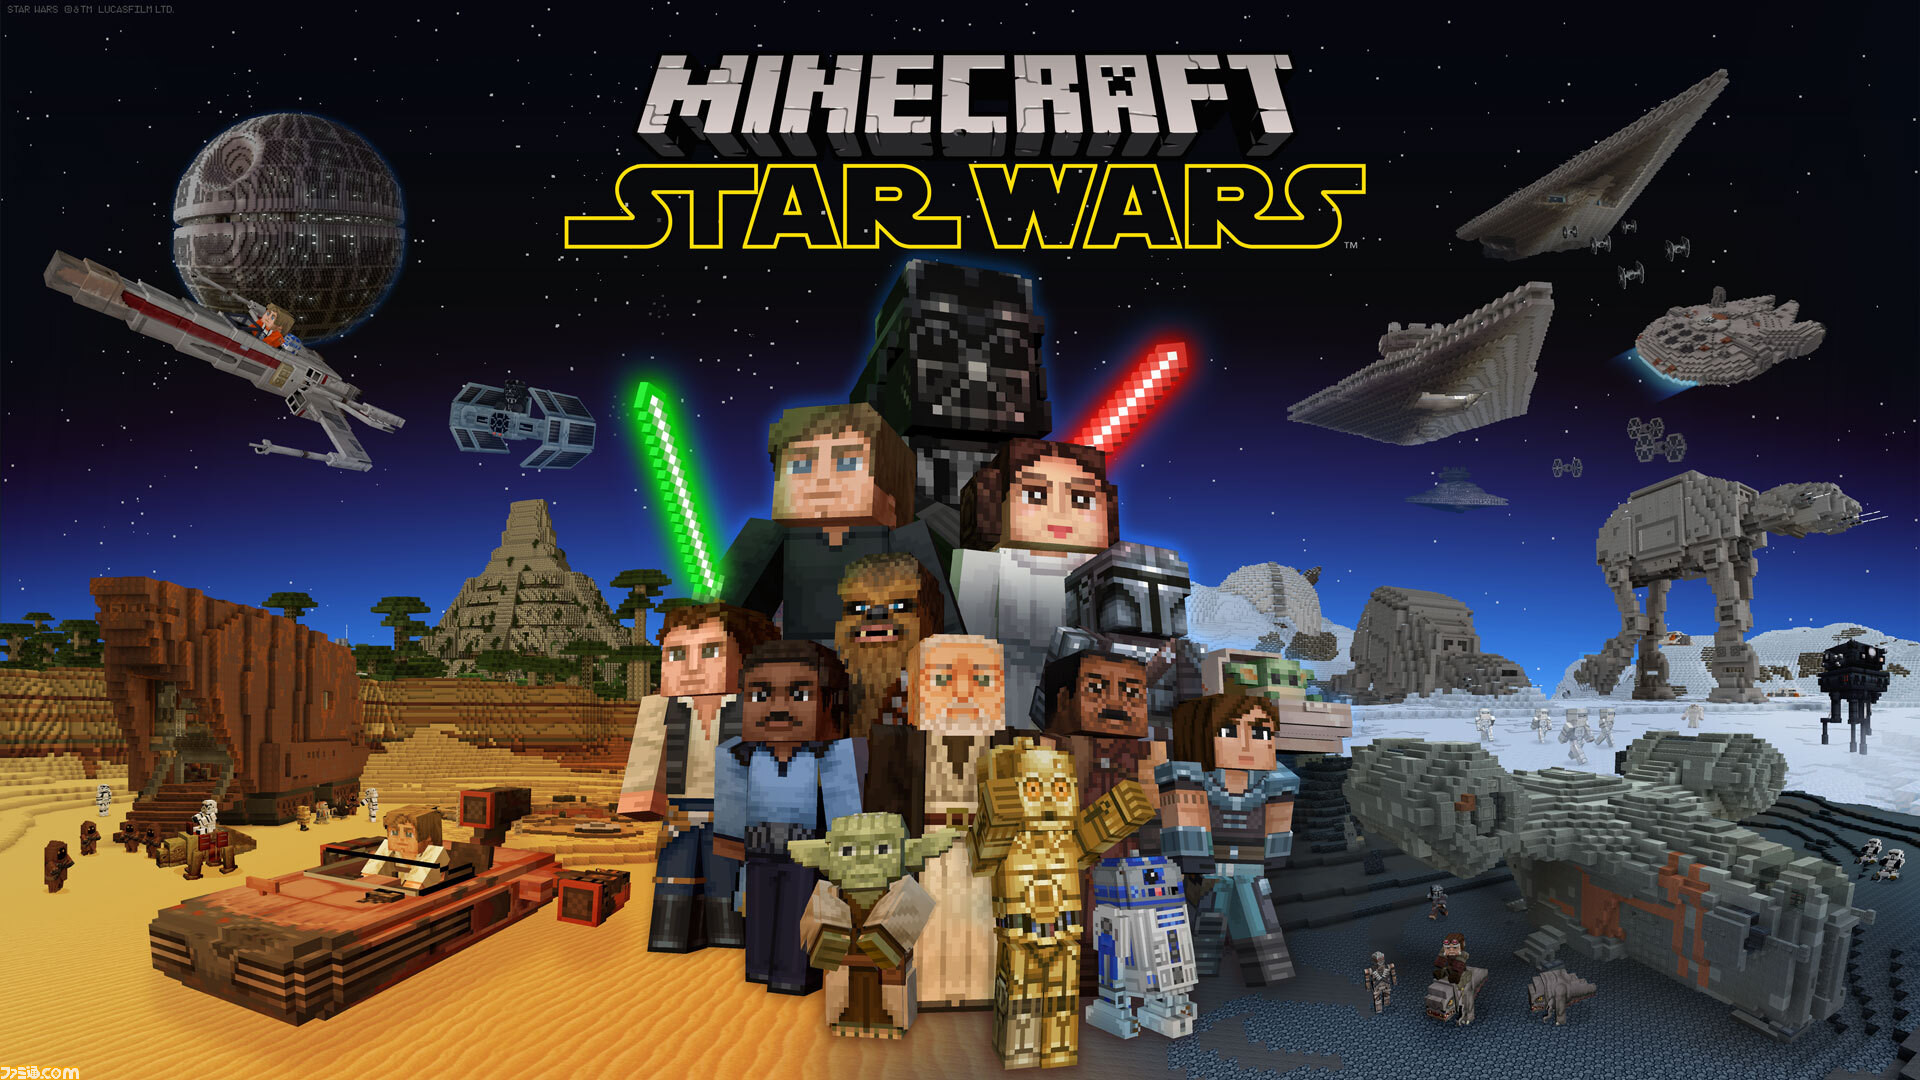 Звёздные войны уже в Minecraft: вышло дополнение с малышом Йодой, Чубаккой и Дартом Вейдером